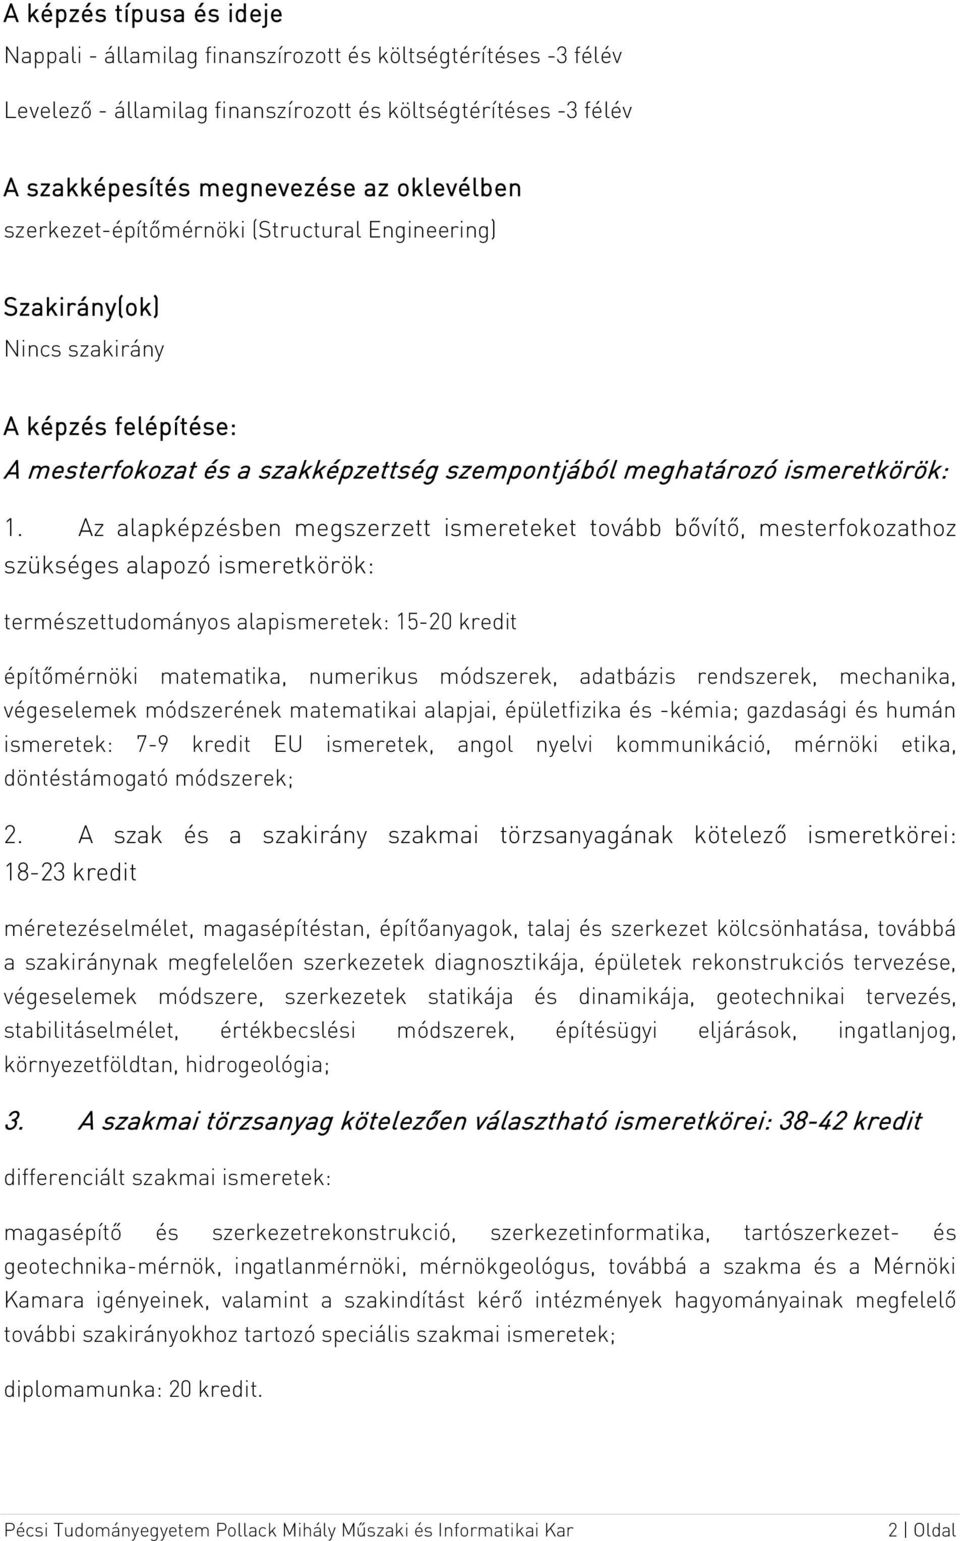 Szerkezet-építőmérnök mesterszak (MSc) - PDF Ingyenes letöltés